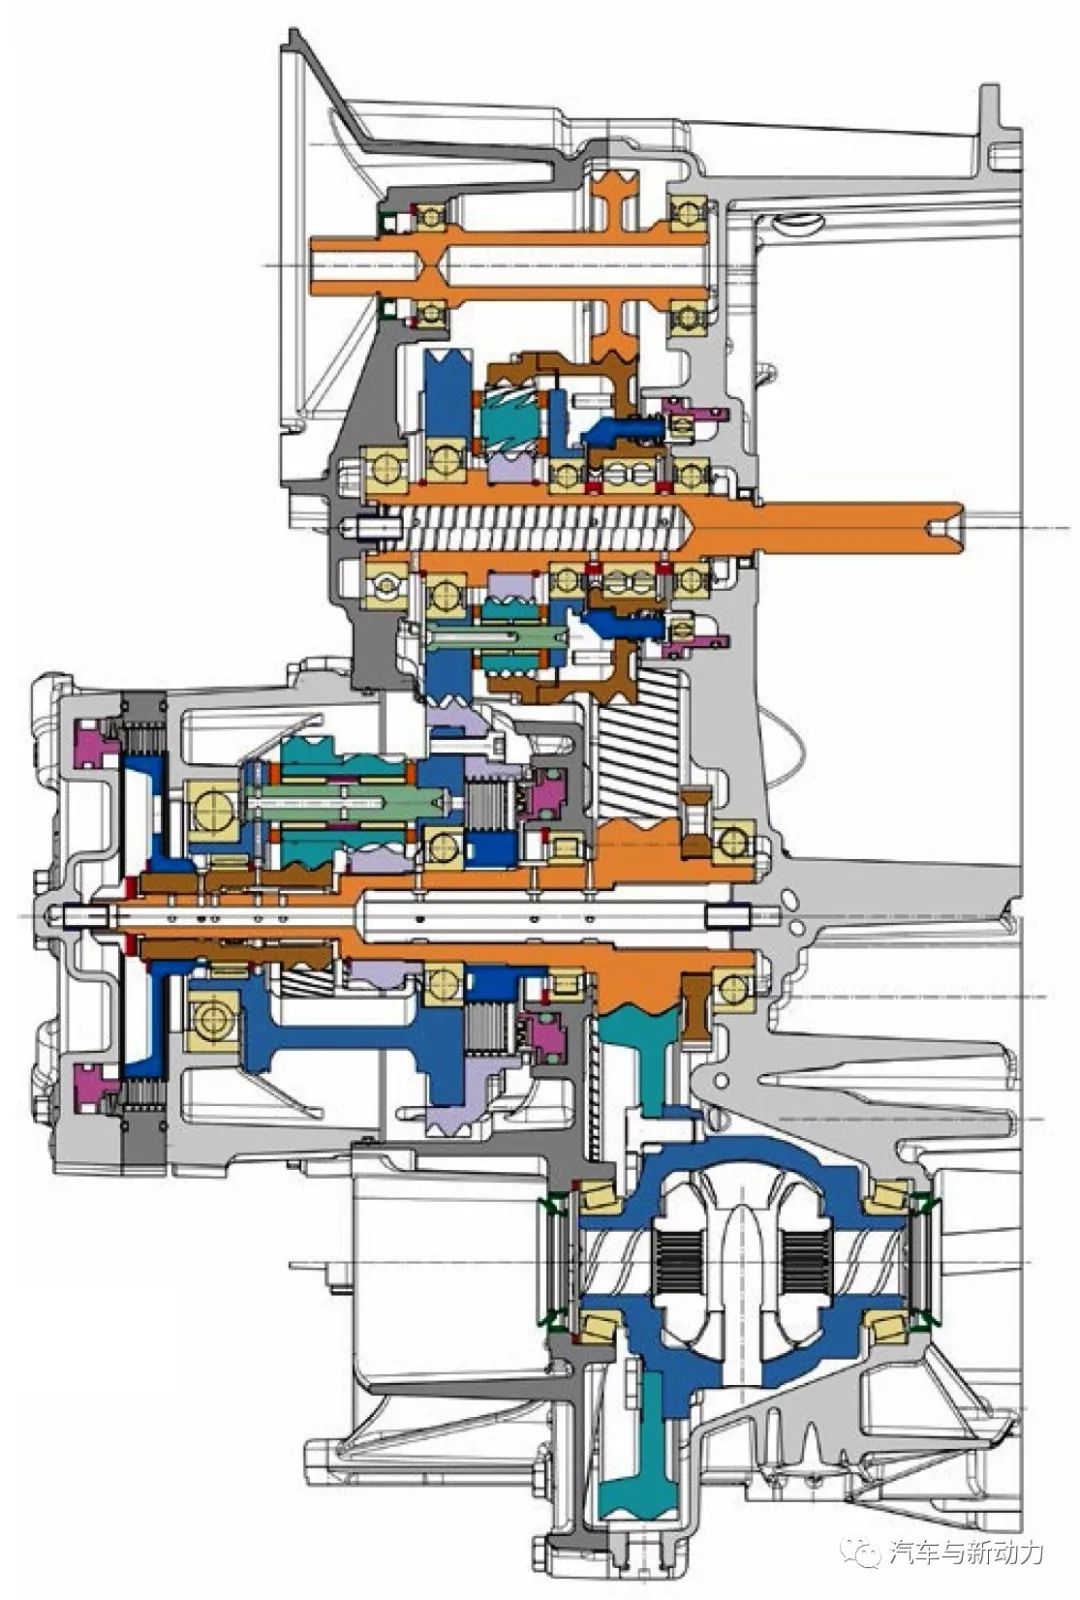 关于插电式混合动力车用高效多模式变速器性能和应用分析